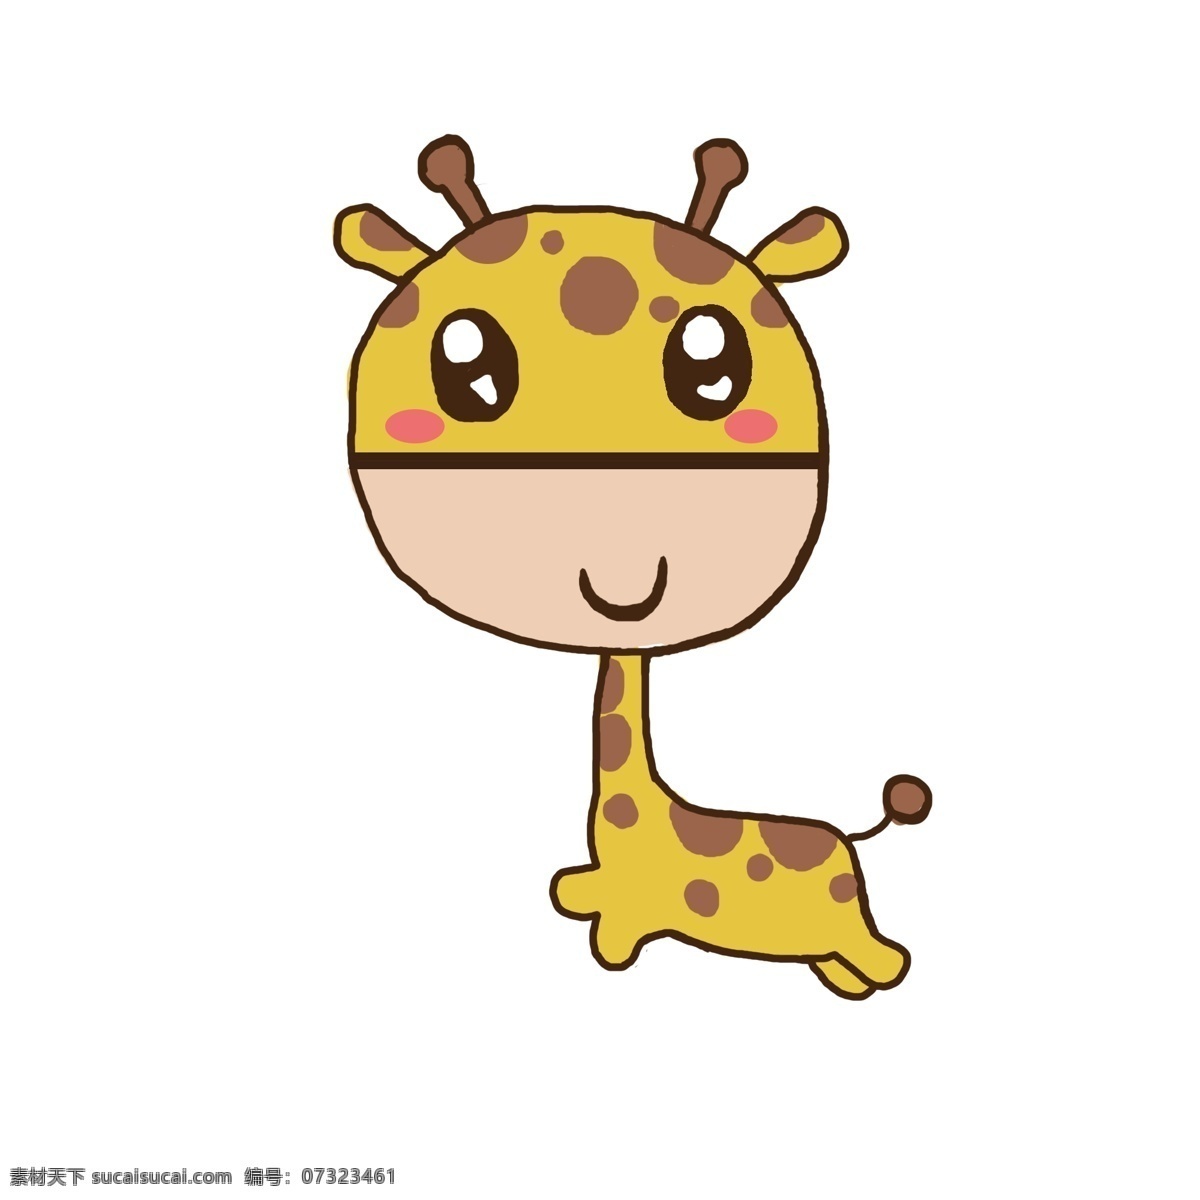 卡通 手绘 动物 长颈鹿 小鹿 可爱小动物 手绘小鹿 卡通手绘动物 萌萌哒小动物 彩色手绘动物